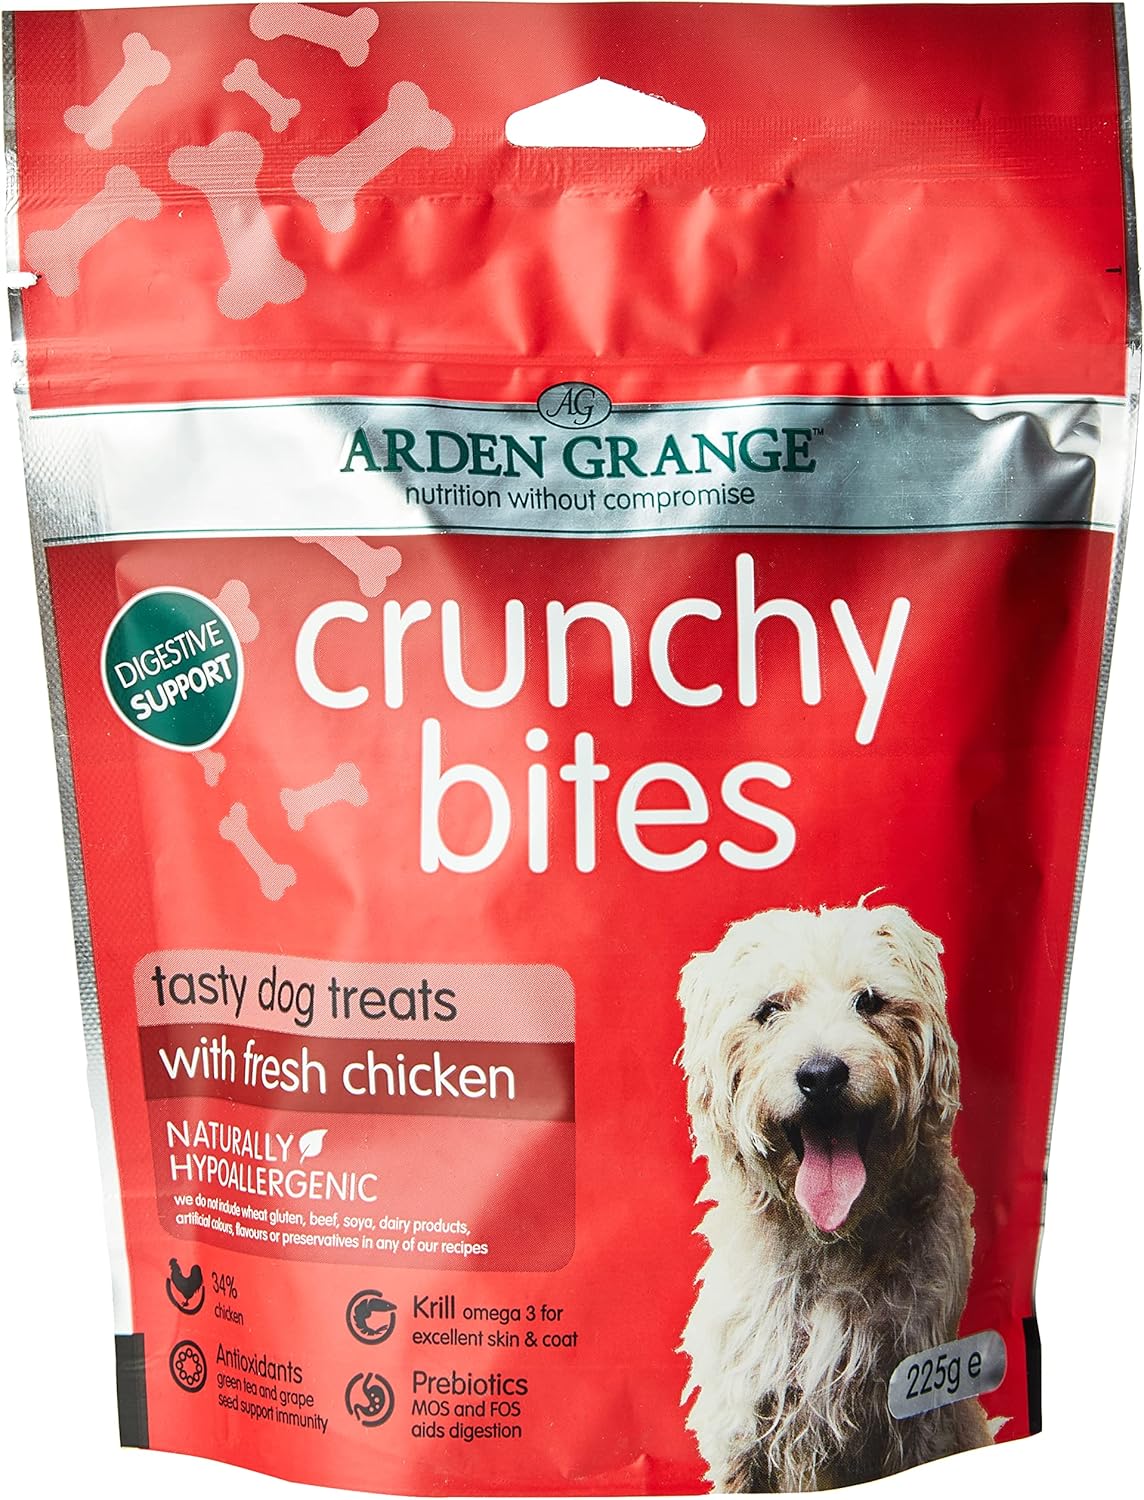 Arden Grange Crunchy Bites Dry Dog Treats Chicken, 225 g?CCB8703